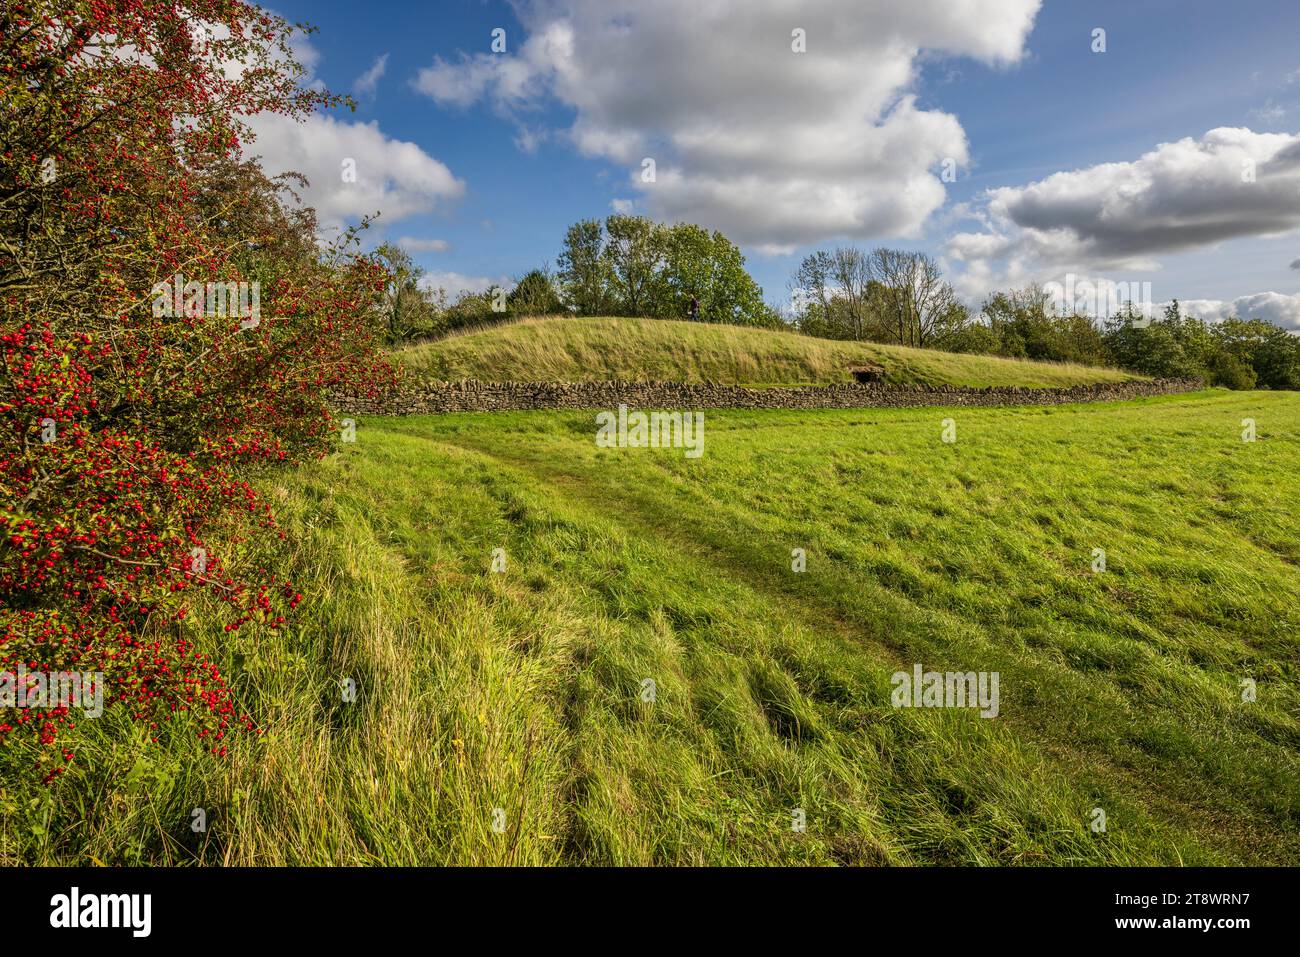 Belas Knap long Barrow néolithique sur Cleeve Hill dans les Cotswolds AONB, Gloucestershire Banque D'Images